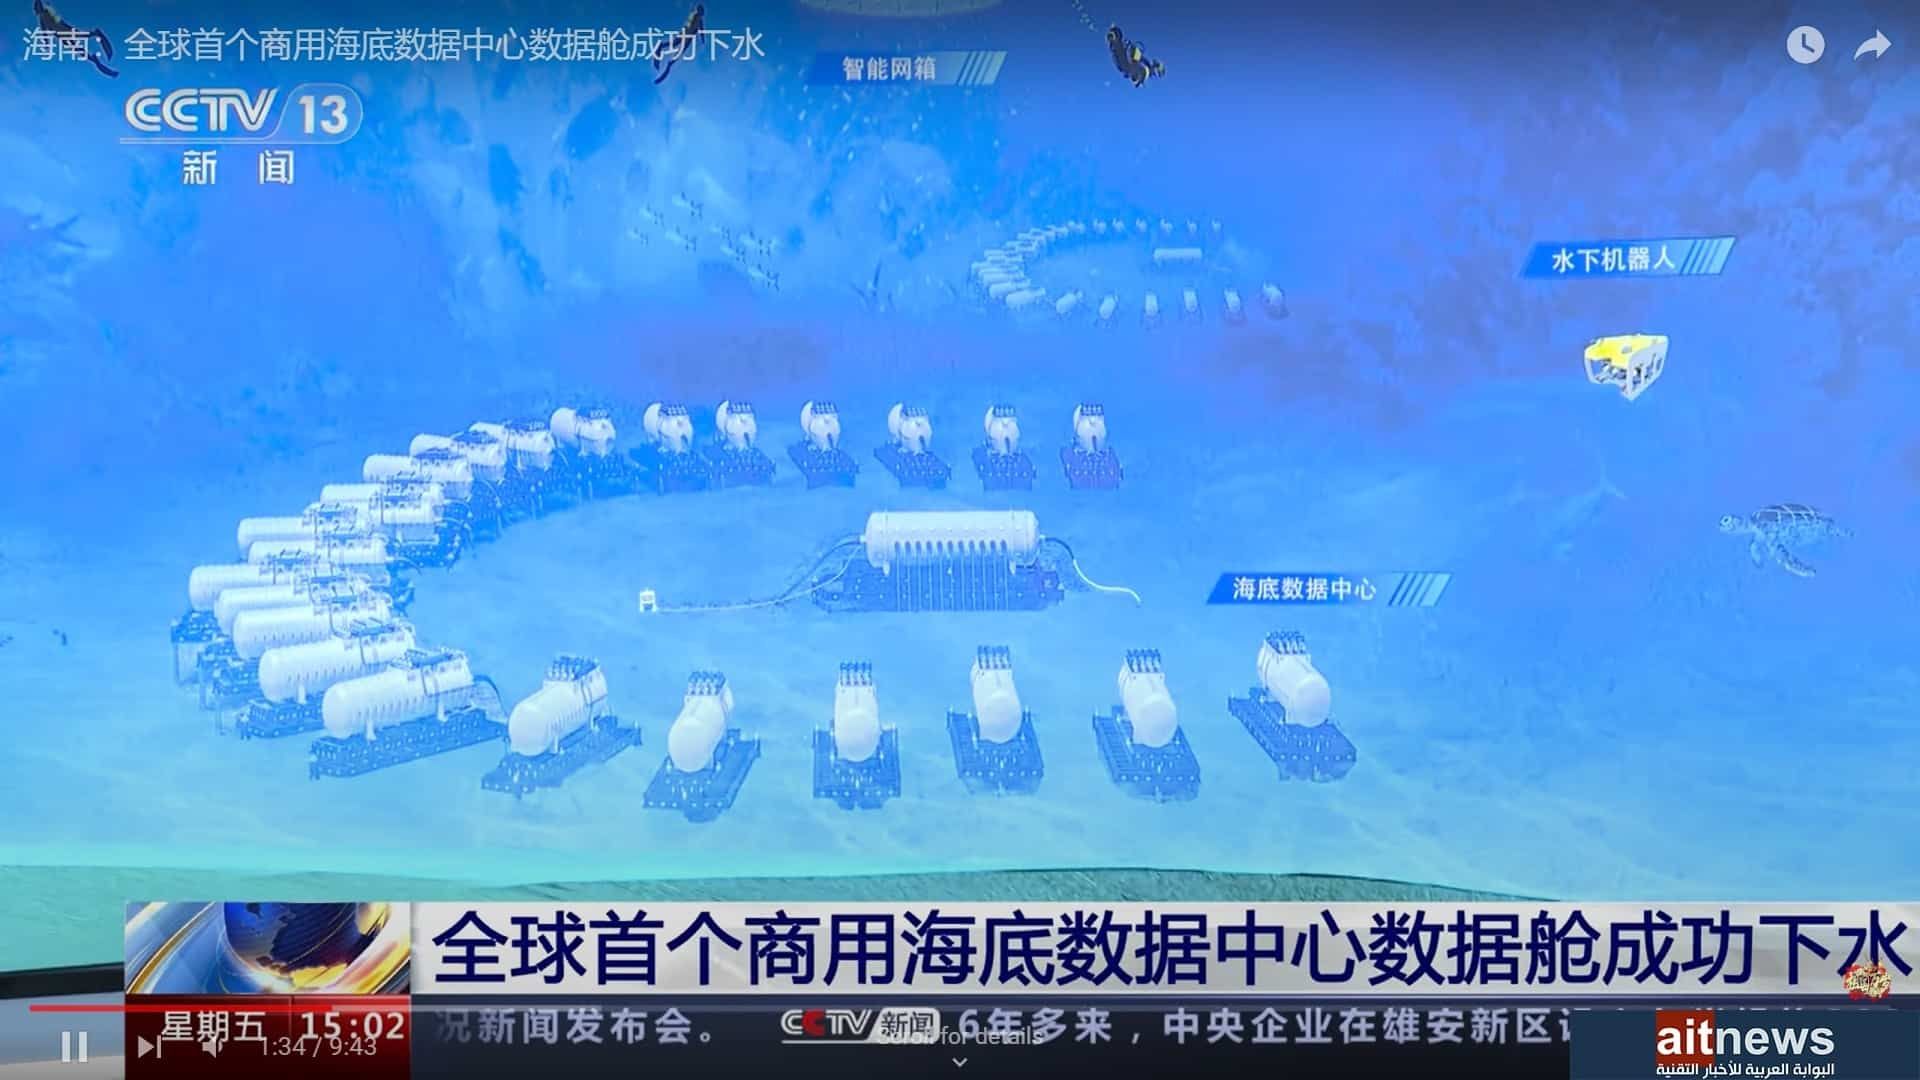 الصين تبدأ تجميع أول مركز بيانات تحت الماء في العالم